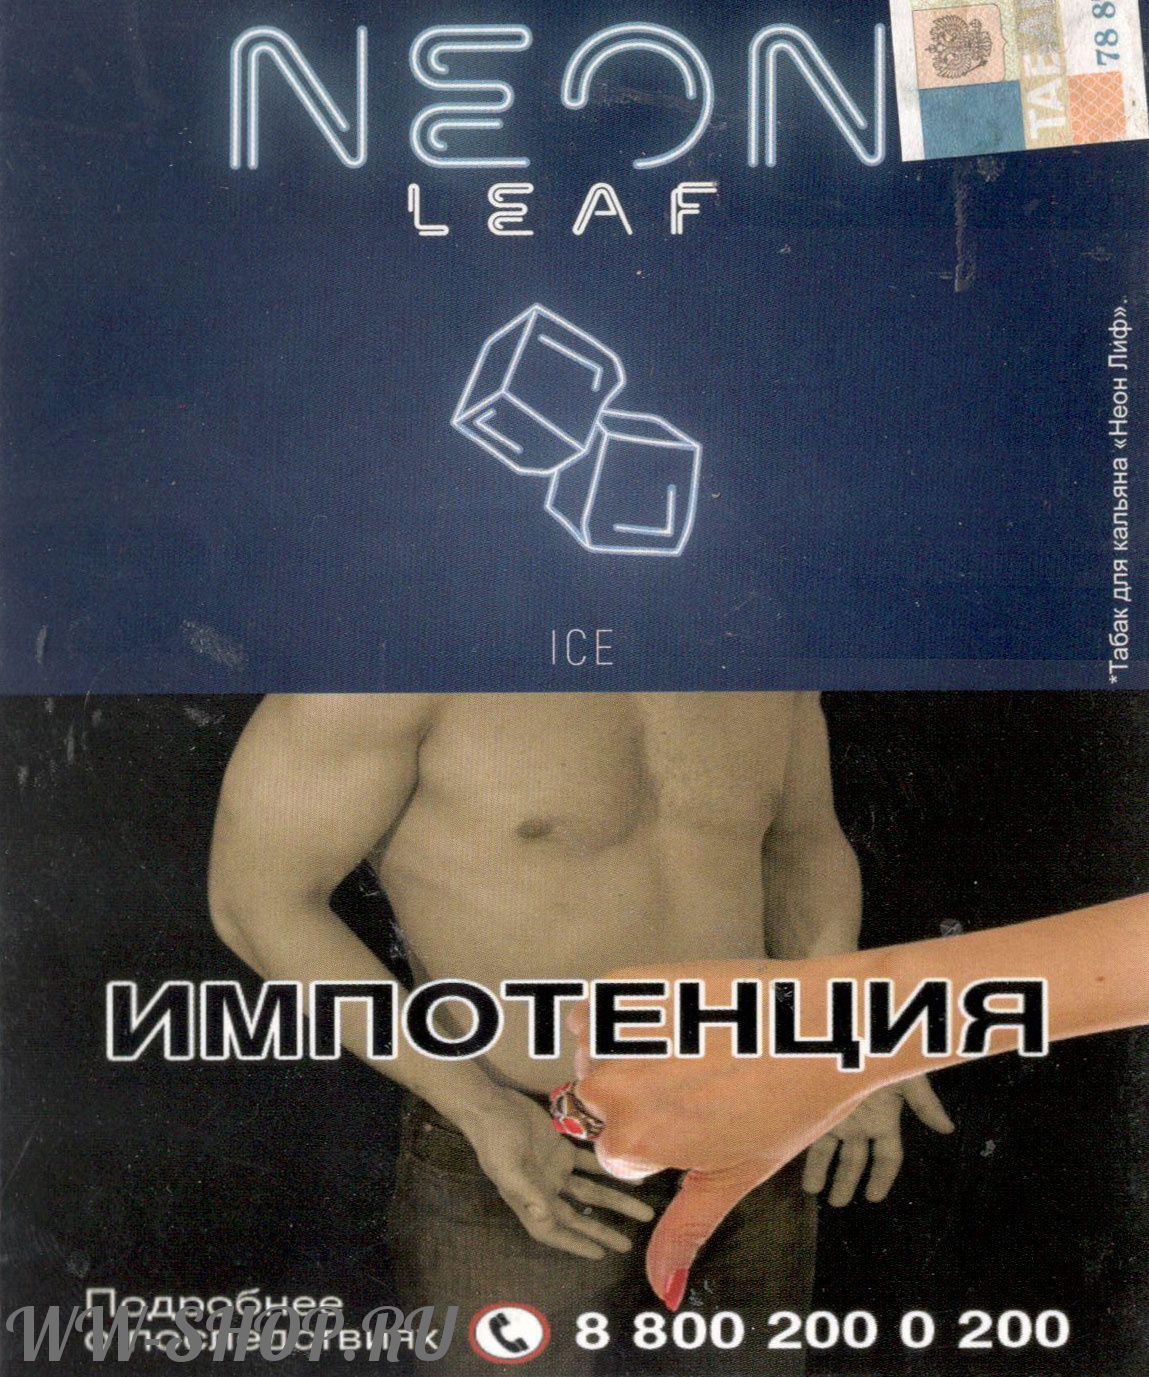 табак neon leaf- лед (ice) Волгоград